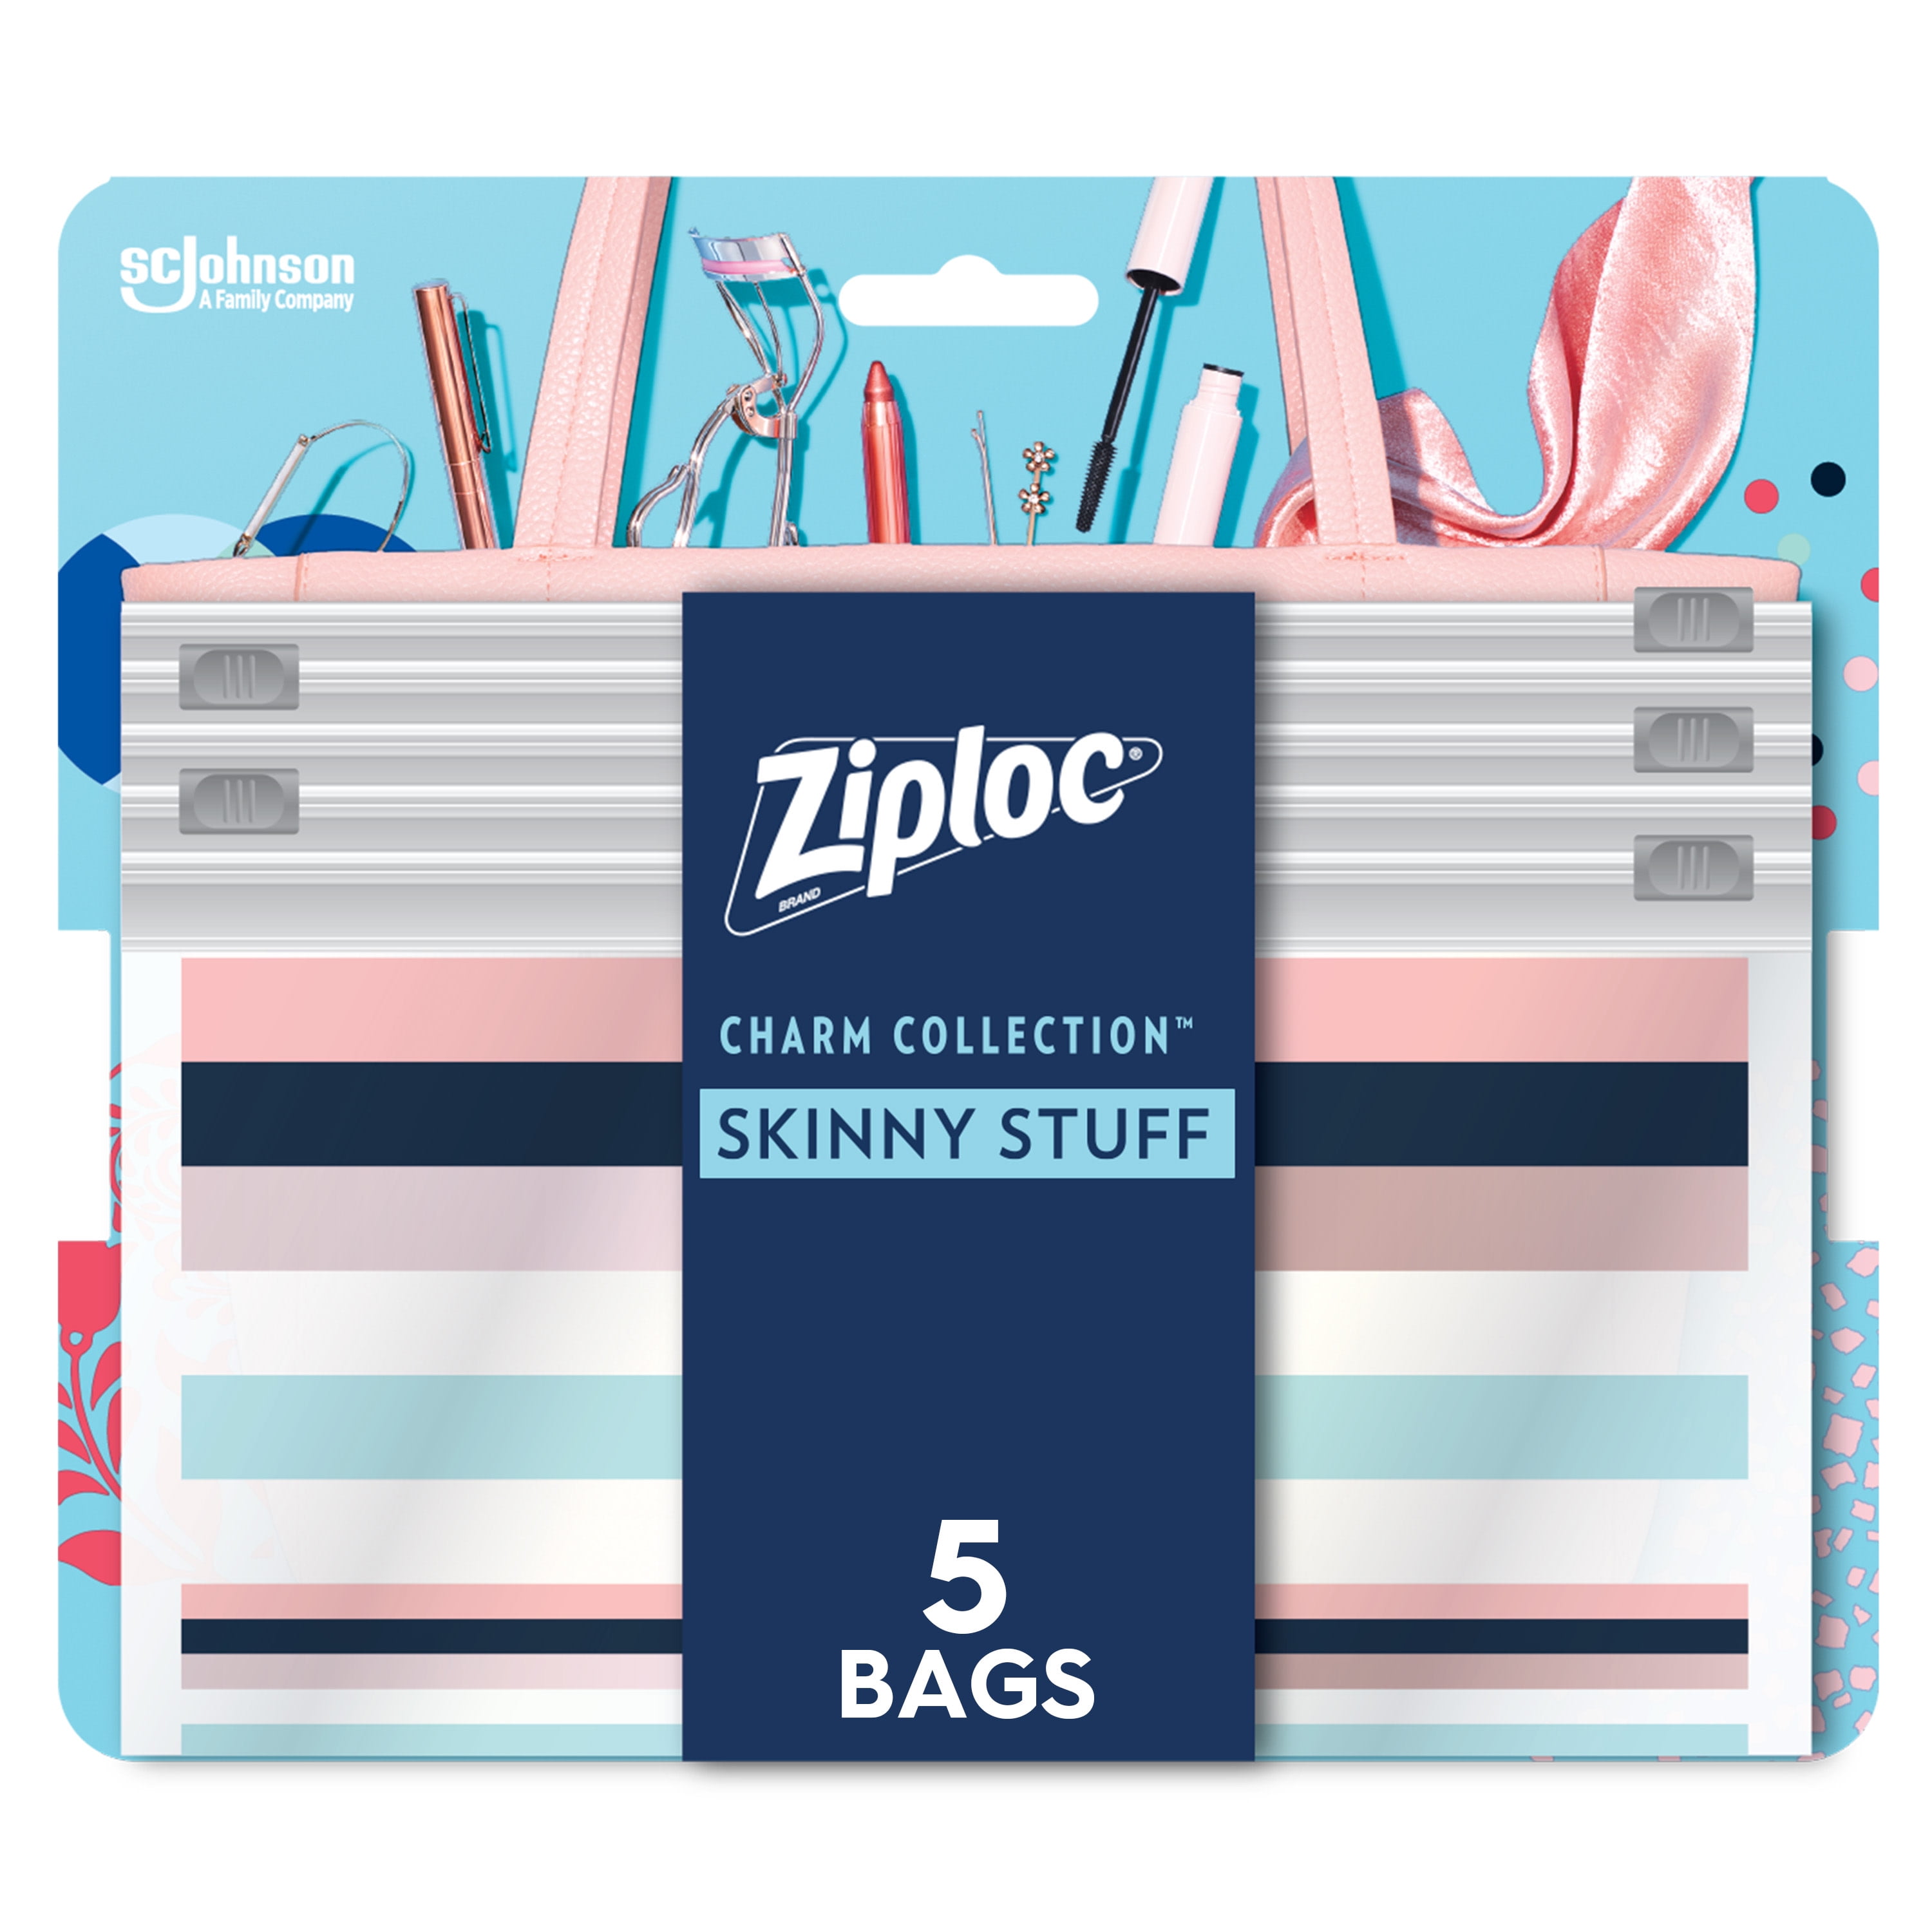 Ziploc®, Space Bag® Variety Pack 6 Flat, Ziploc® brand